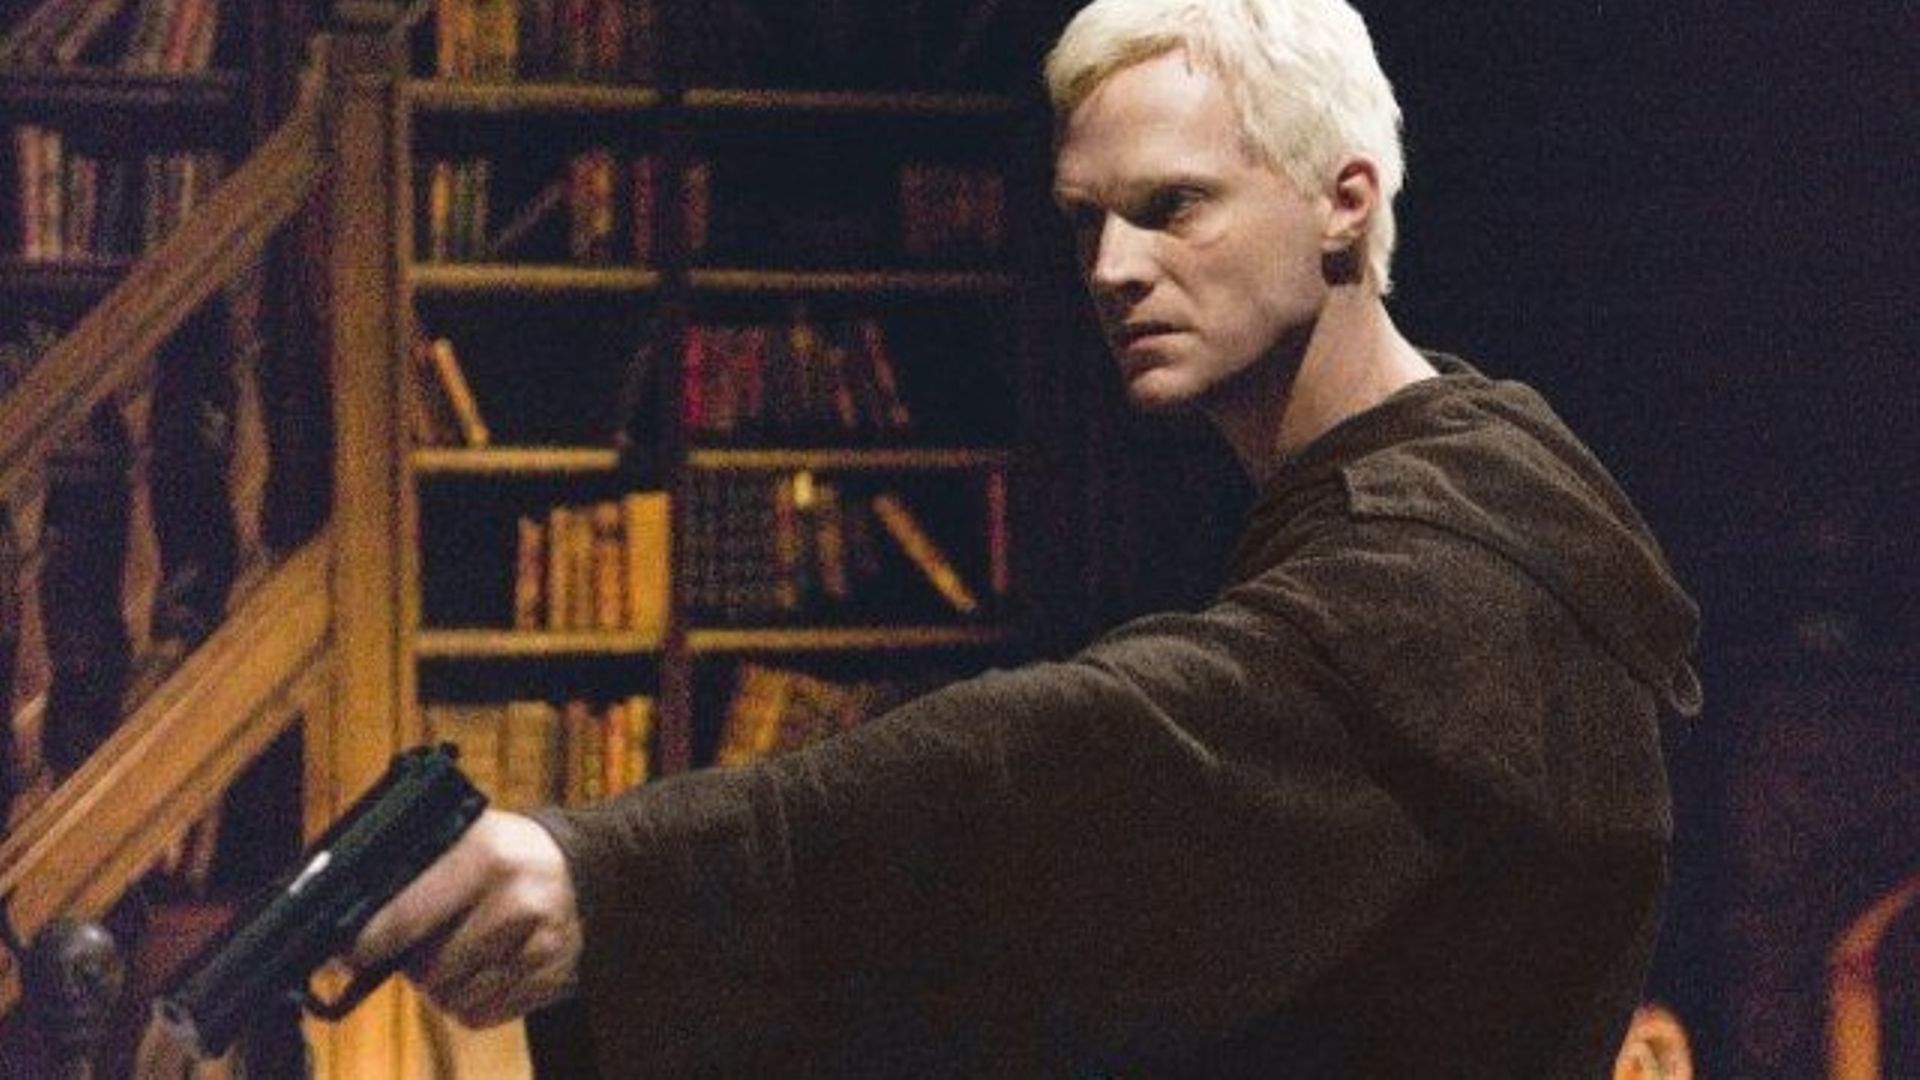 Paul Bettany joue Silas, le bras armé de l’Opus Dei dans le Da Vinci Code